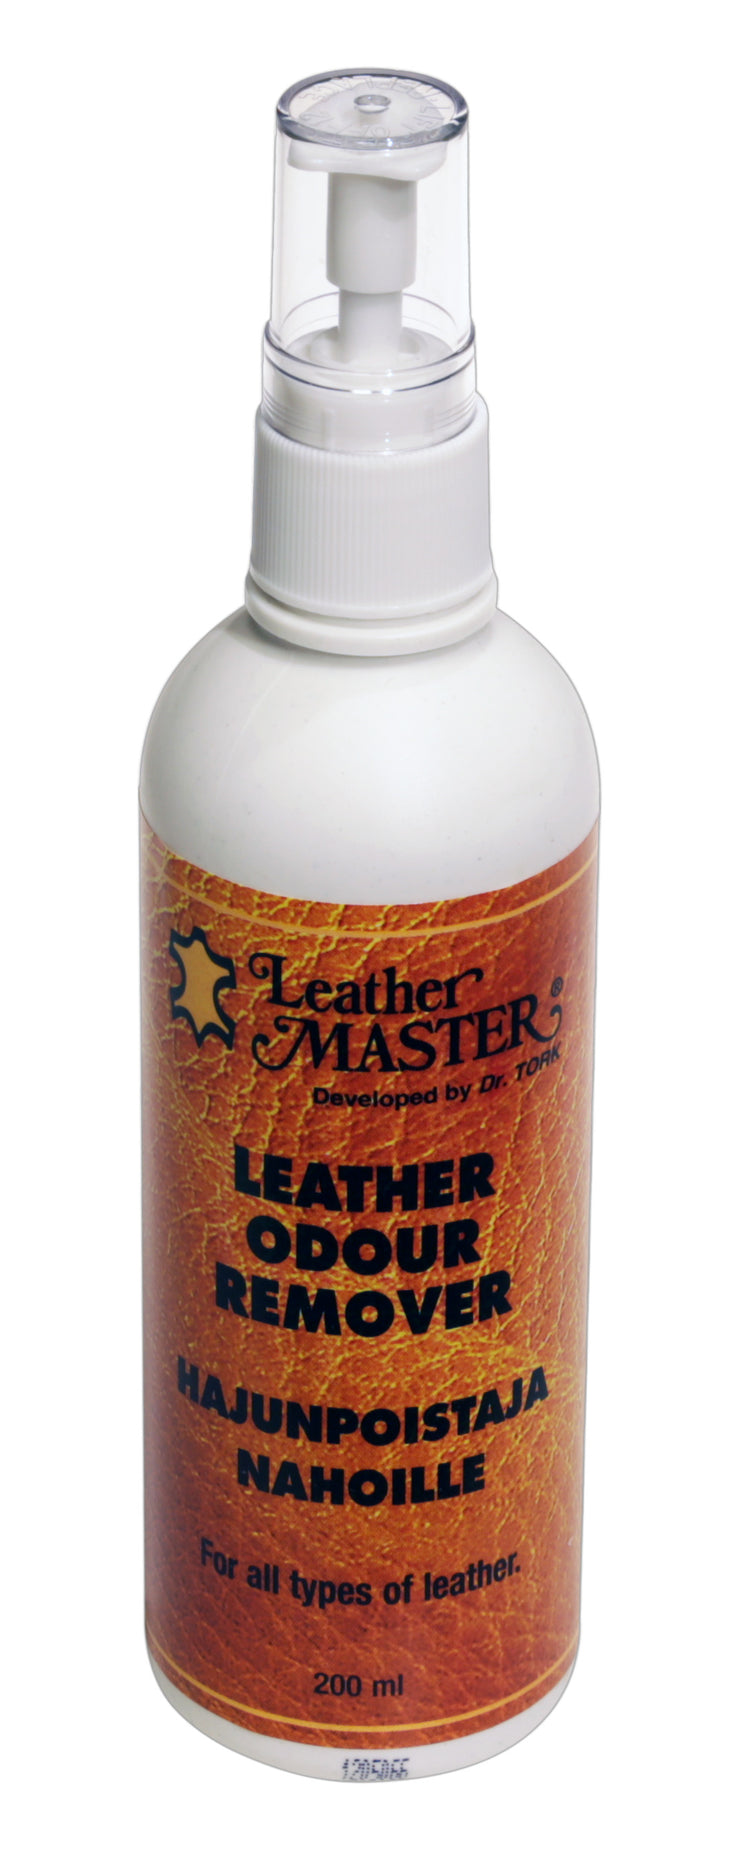 Leather Master hajunpoistaja neutralisoi ikävät hajut kaikista nahkatuotteista.